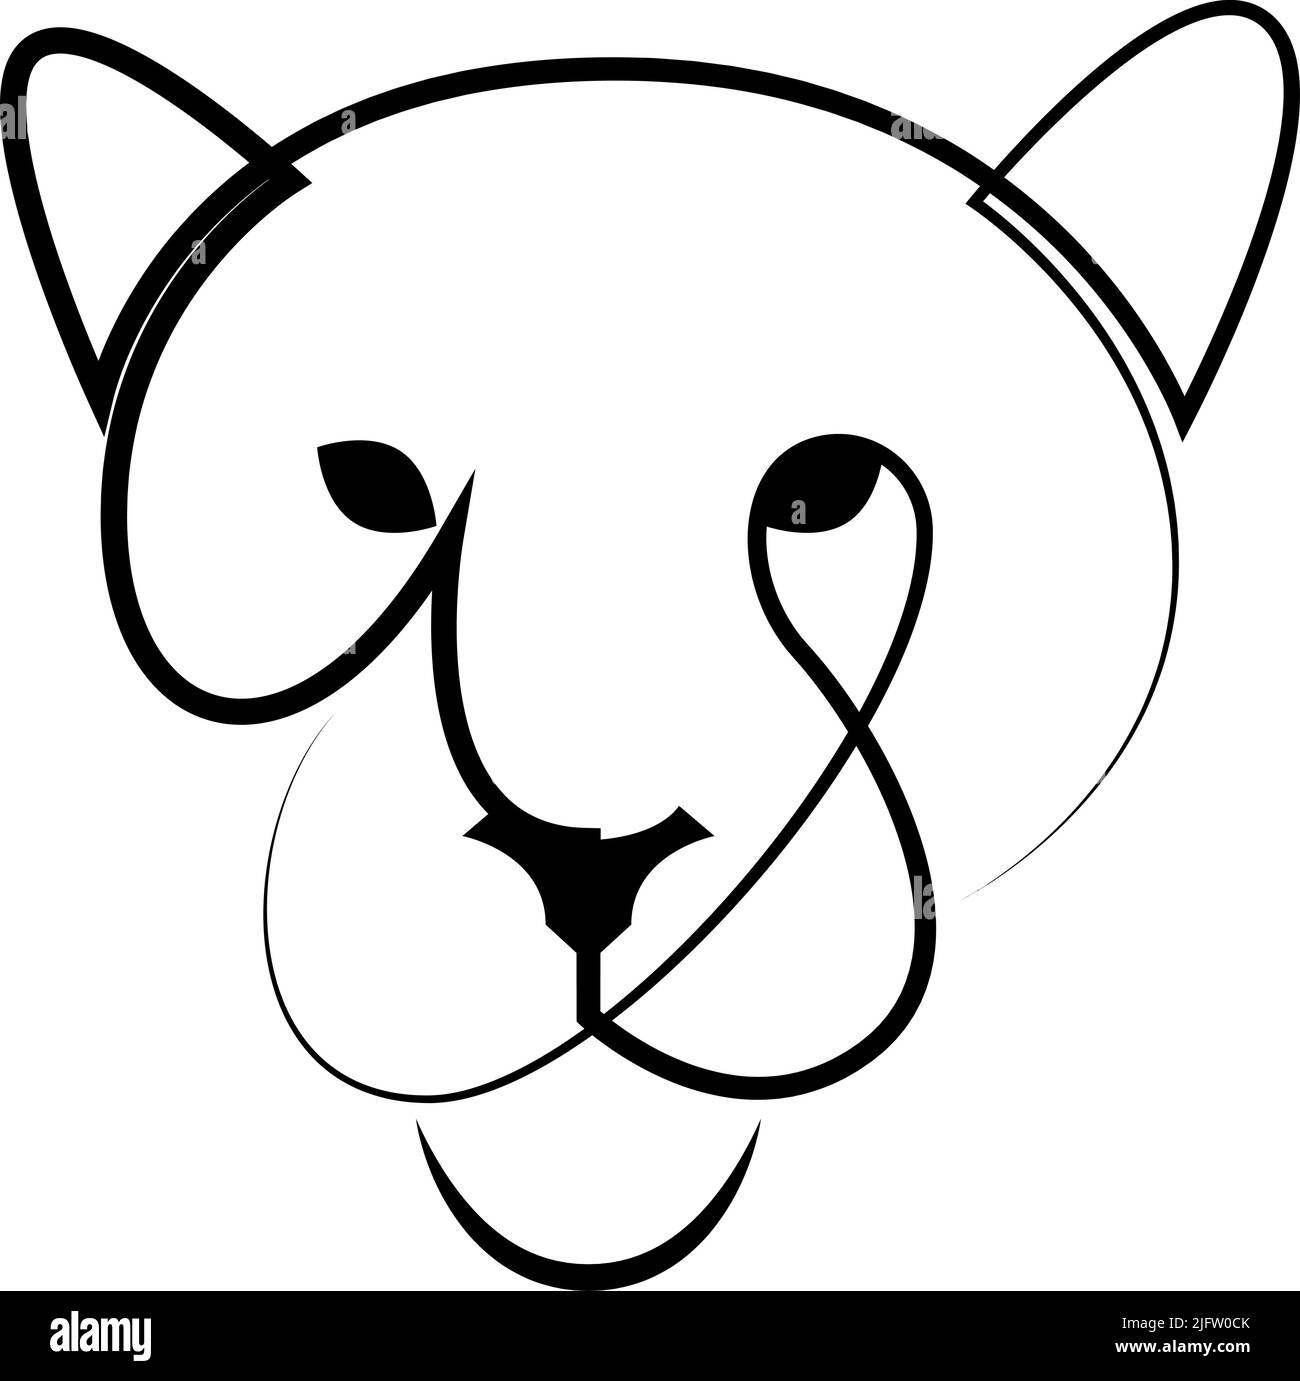 Modèle de logo Lioness Line art. Icône de ligne de tête Puma, lion ou jaguar. Illustration vectorielle Illustration de Vecteur